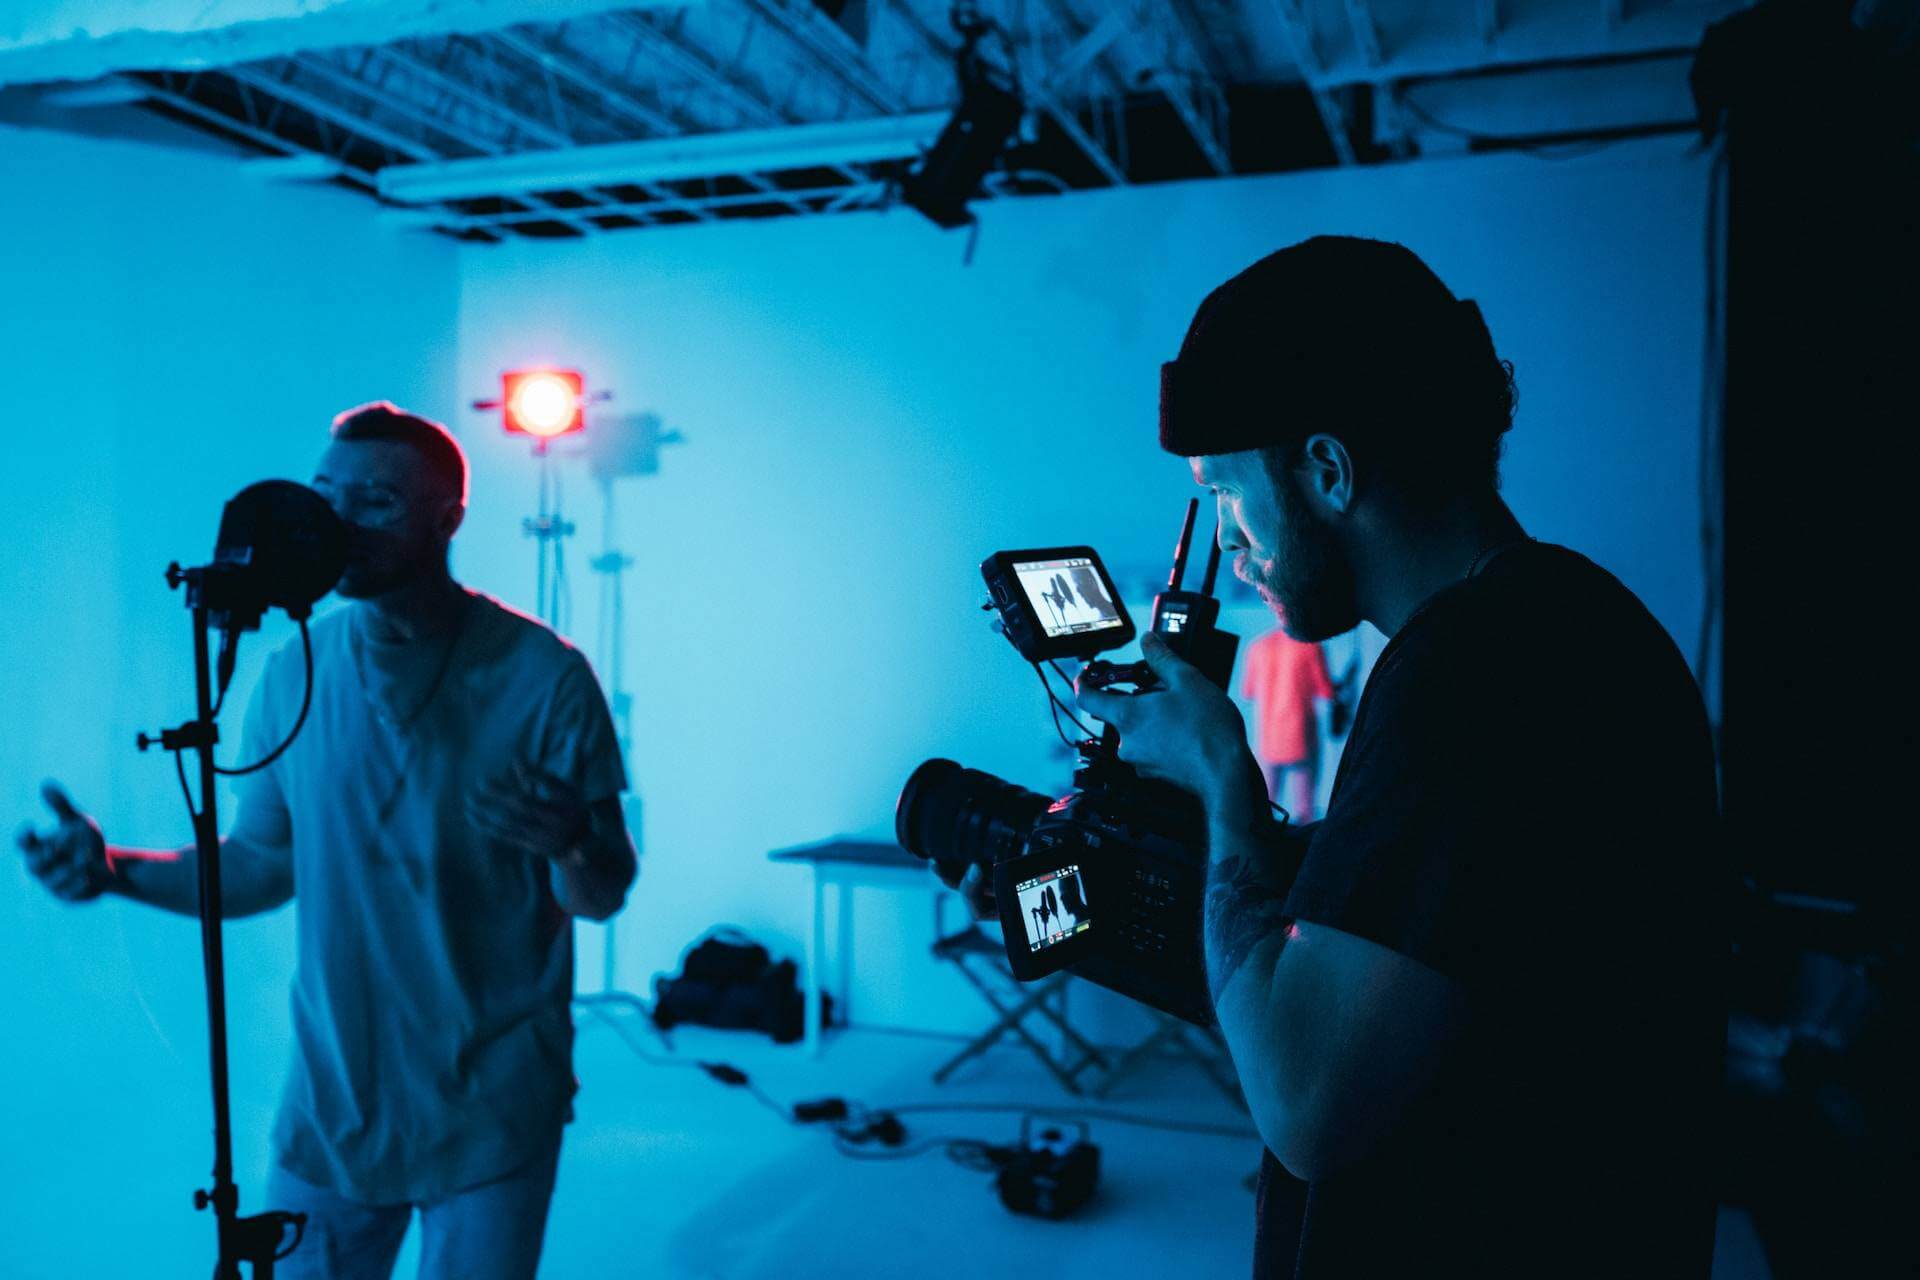 Music video company shooting scenario